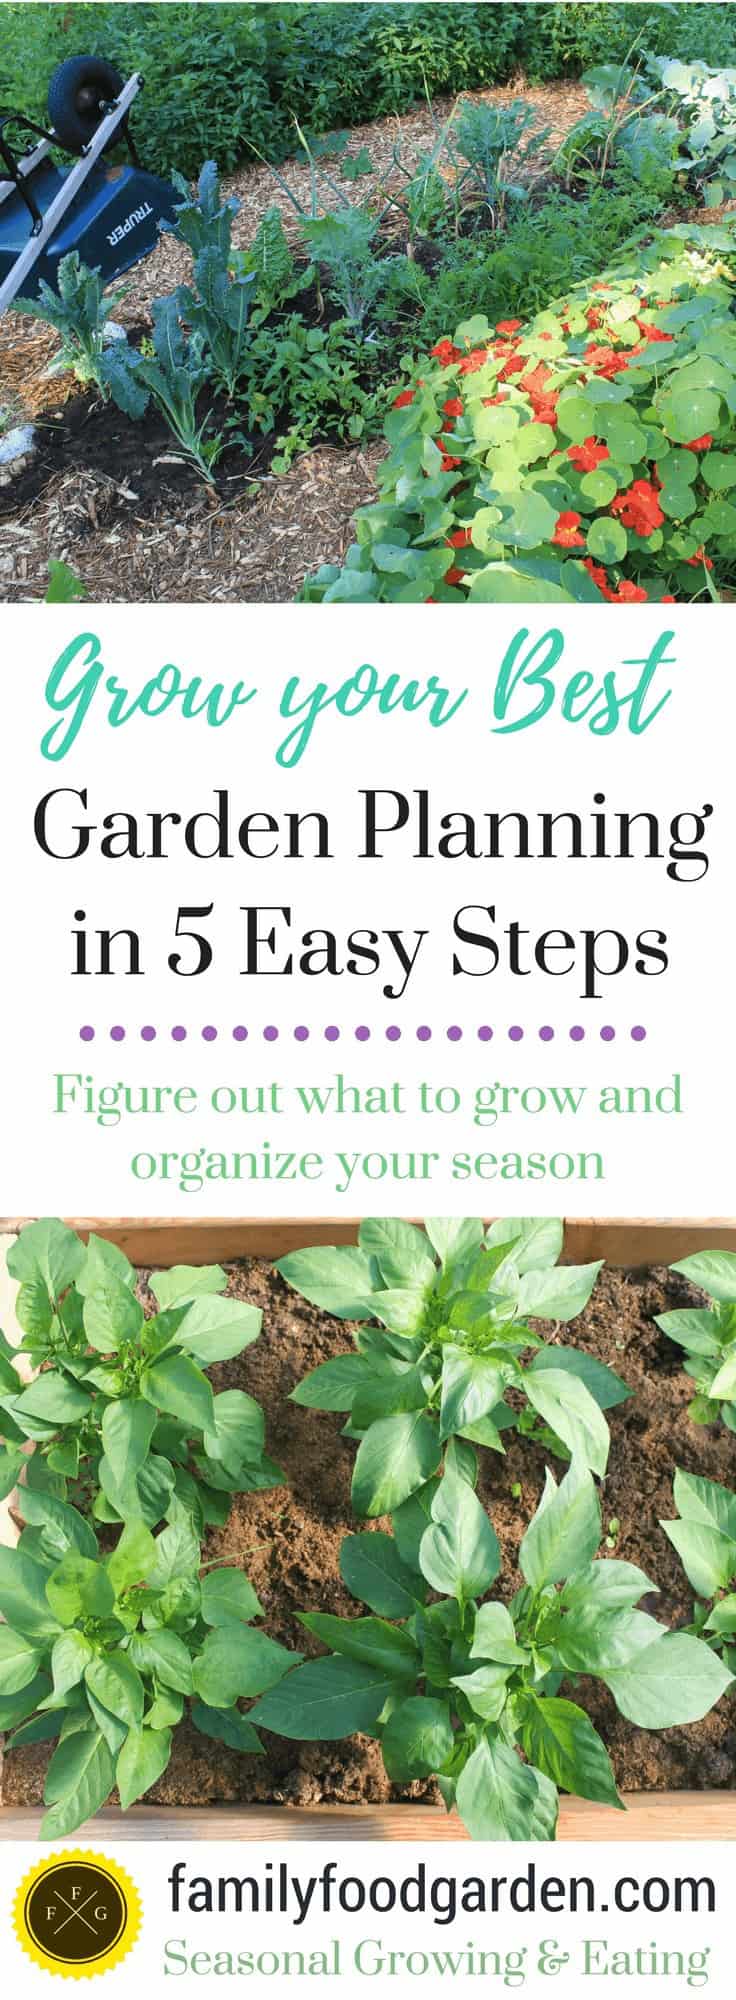 Grow Your Best: Garden Planning in 5 Easy Steps